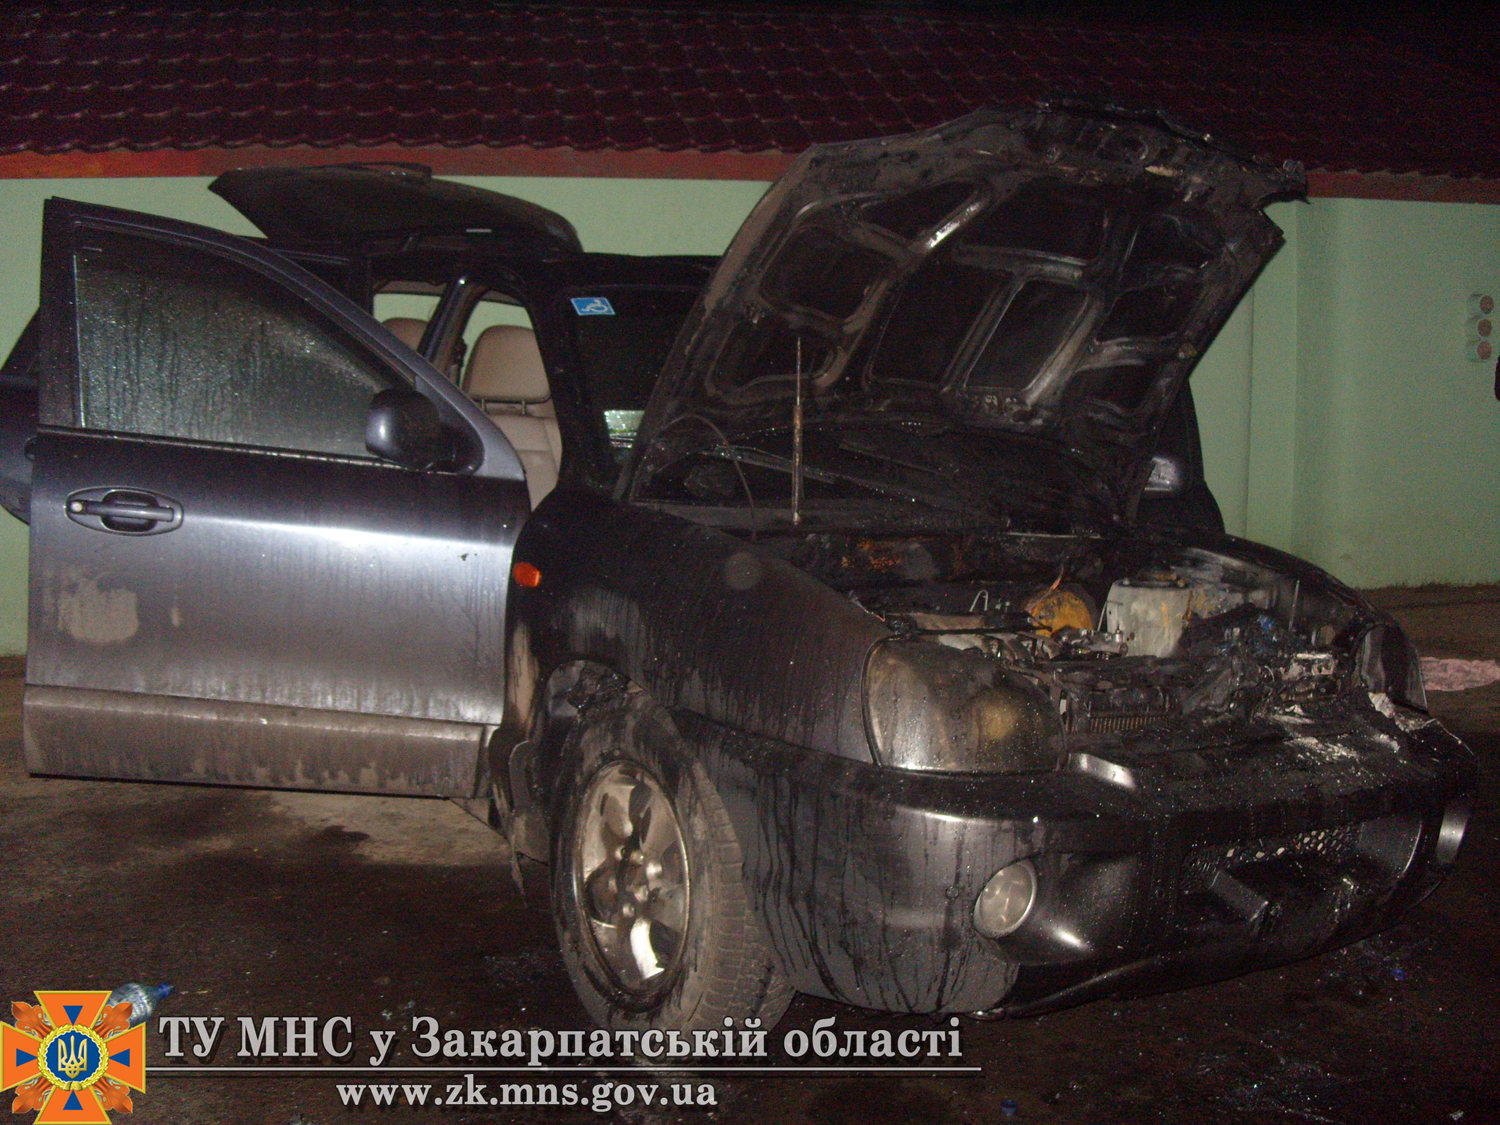 Вночі спалили автомобіль заступника міського голови Ужгорода (ФОТО)